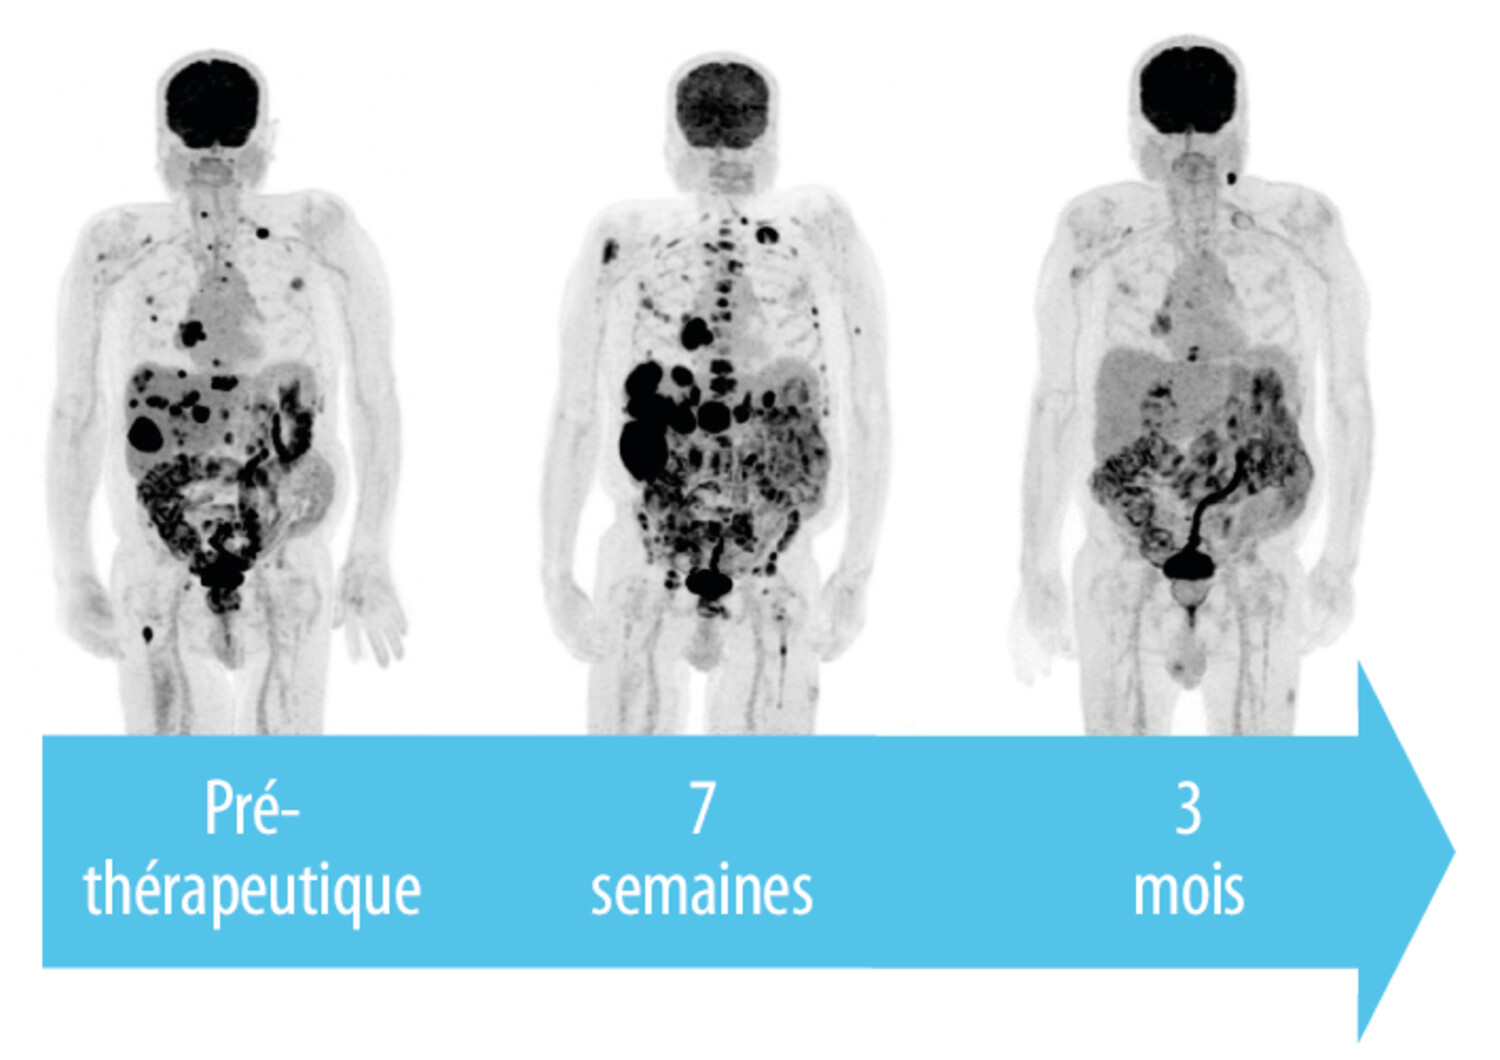 Intérêt de la TEP-TDM au 18FDG dans la prise en charge du cancer bronchique traité par immunothérapie - Figure 2